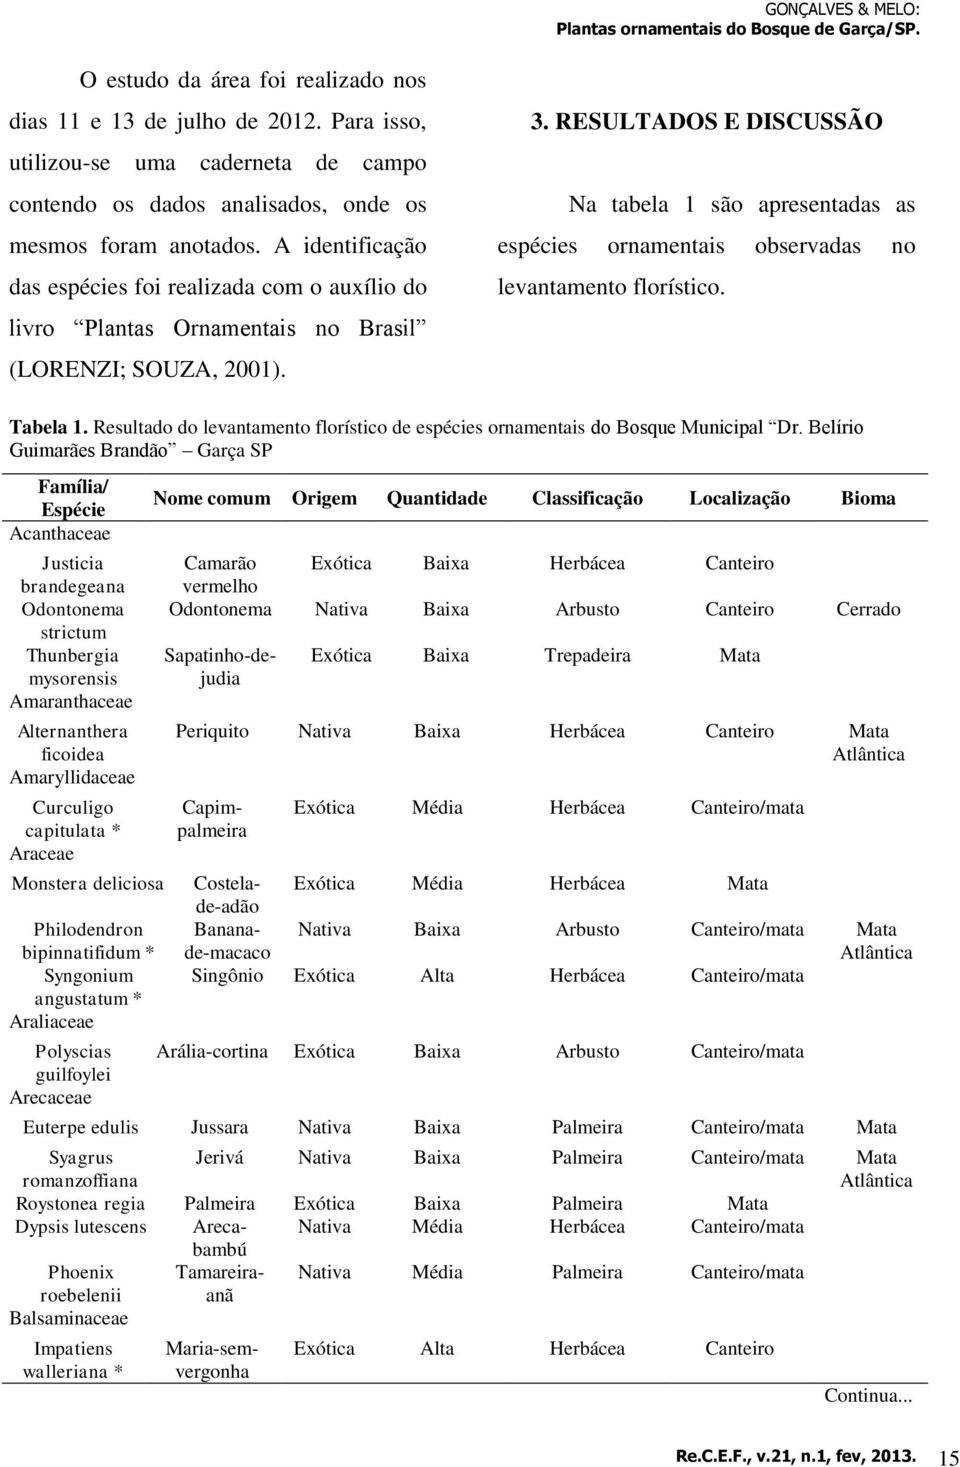 RESULTADOS E DISCUSSÃO Na tabela 1 são apresentadas as espécies ornamentais observadas no levantamento florístico. Tabela 1.